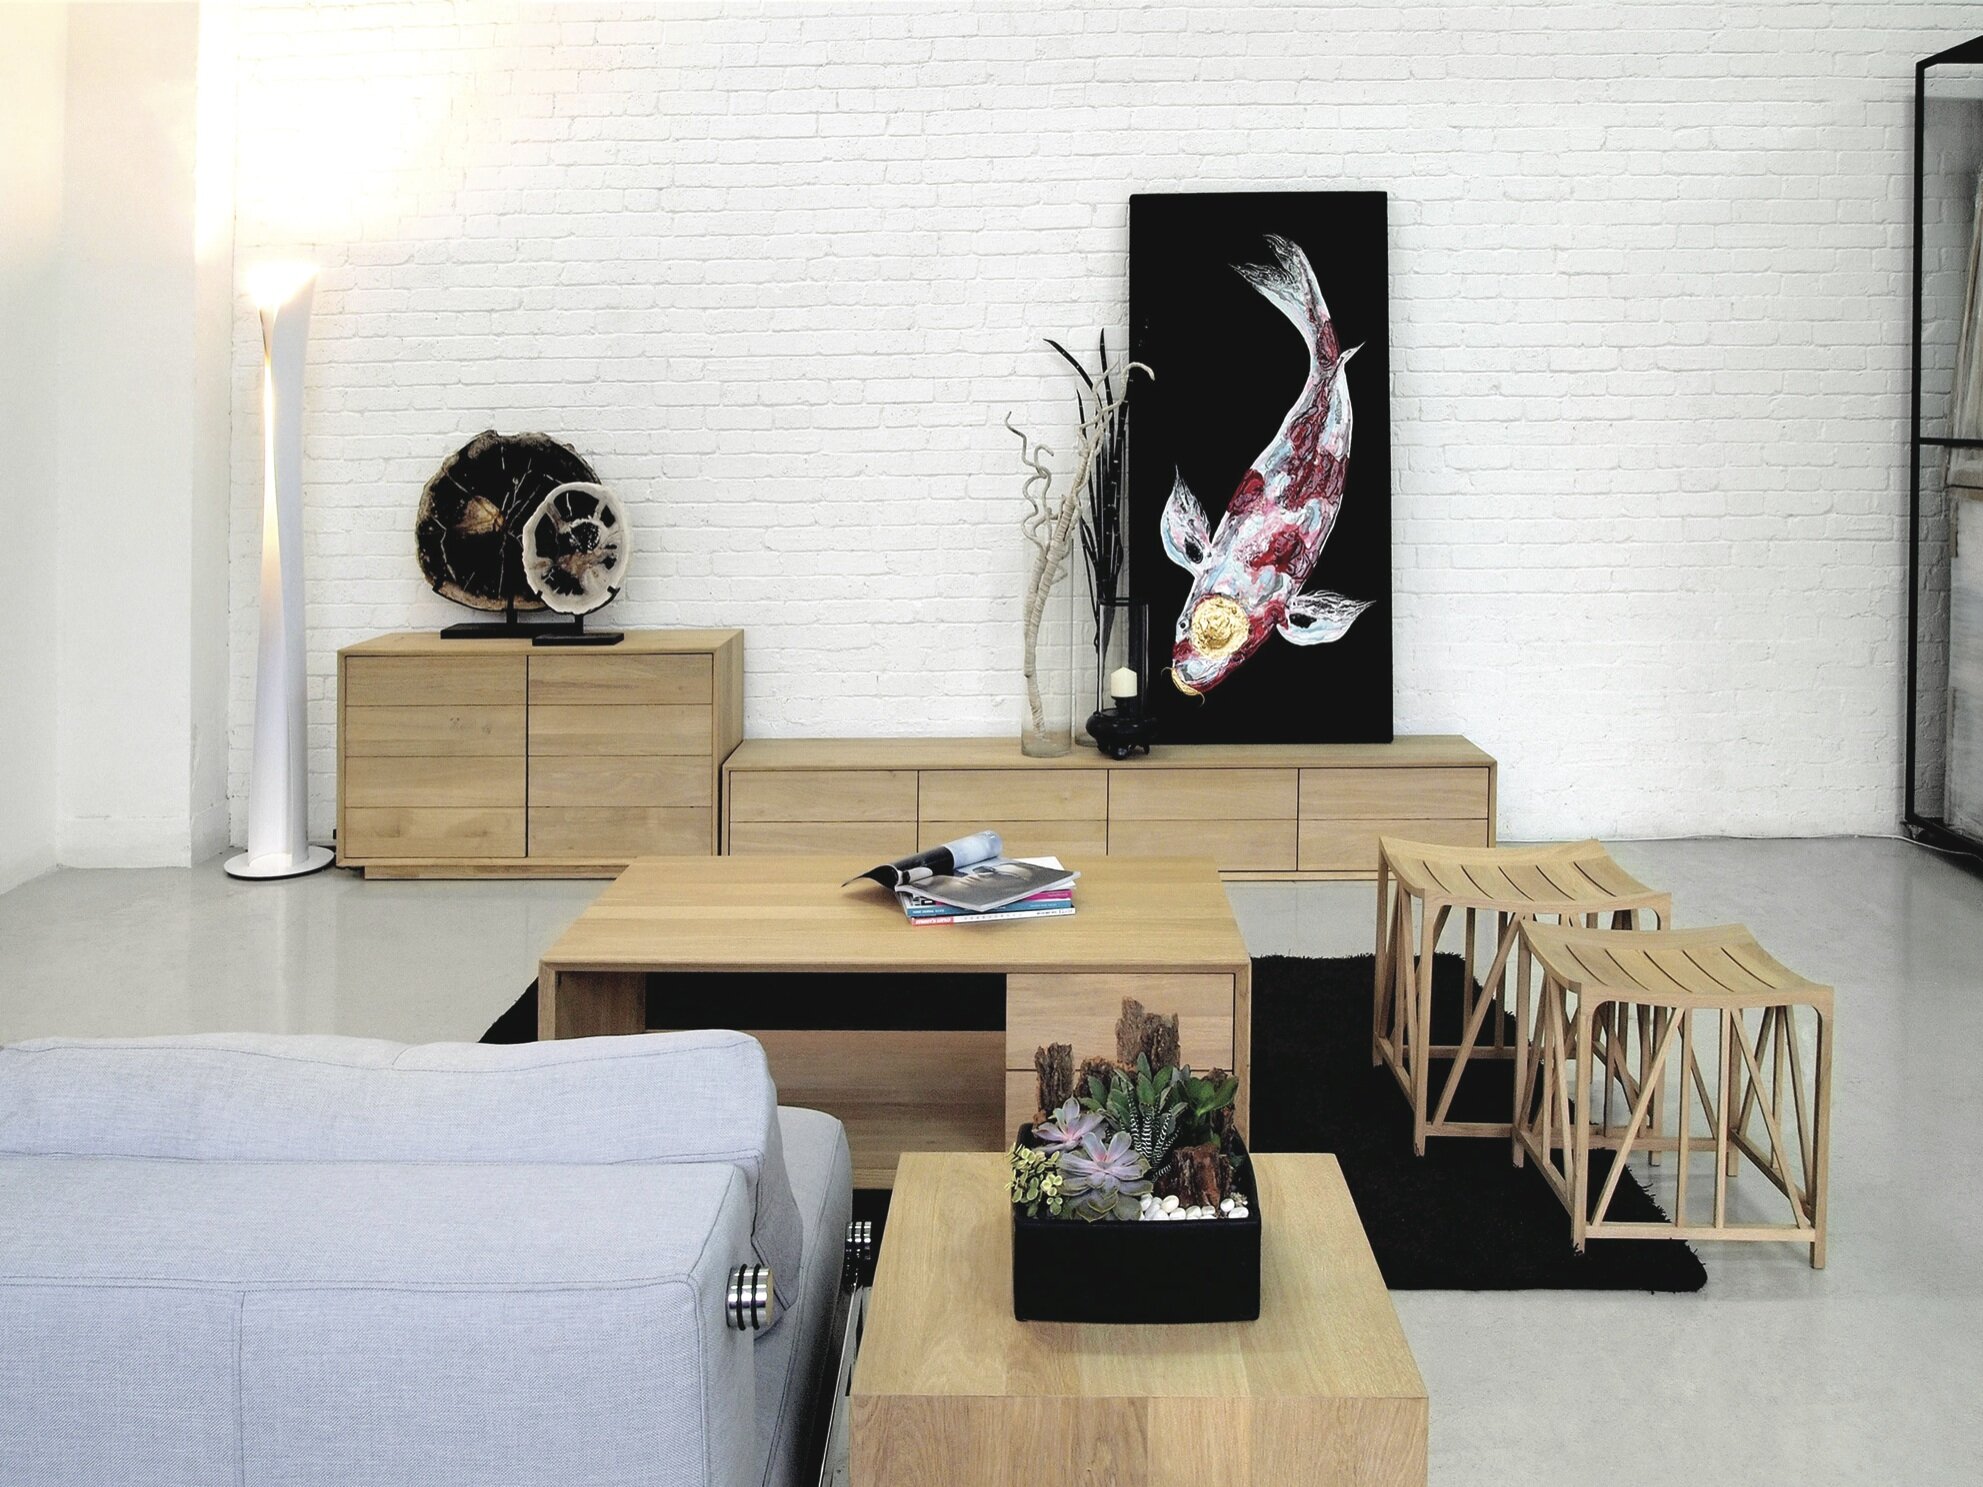 時尚矚目的白色橡木家具，外形線條流麗兼耐看，給人一種樸實的生活感覺。(＄3,900-＄14,200/OVO)